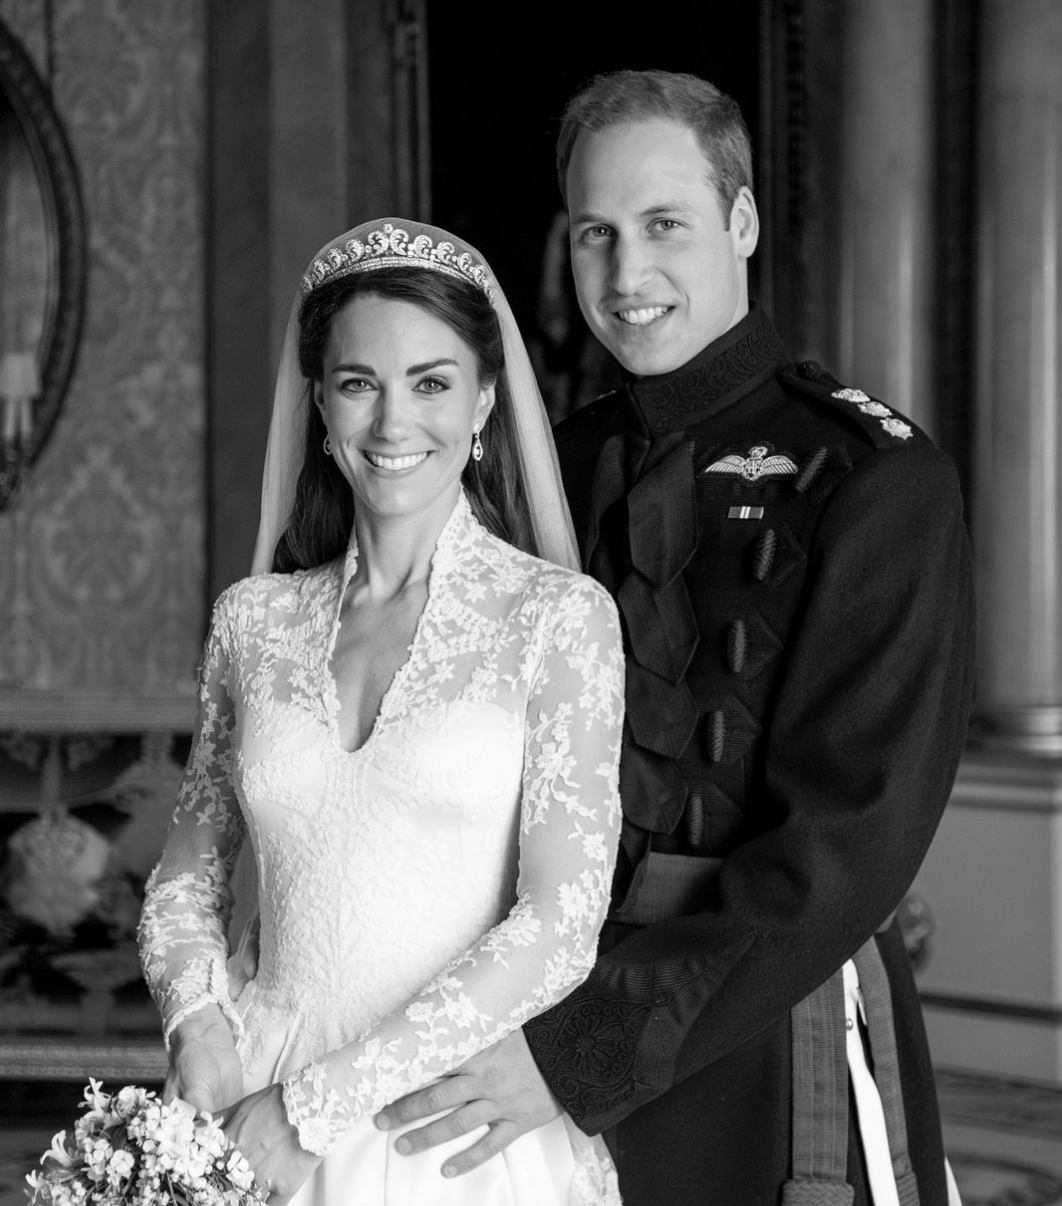 William e Kate, la coppia pubblica la foto commovente per l'Anniversario: "Come 13 anni fa"